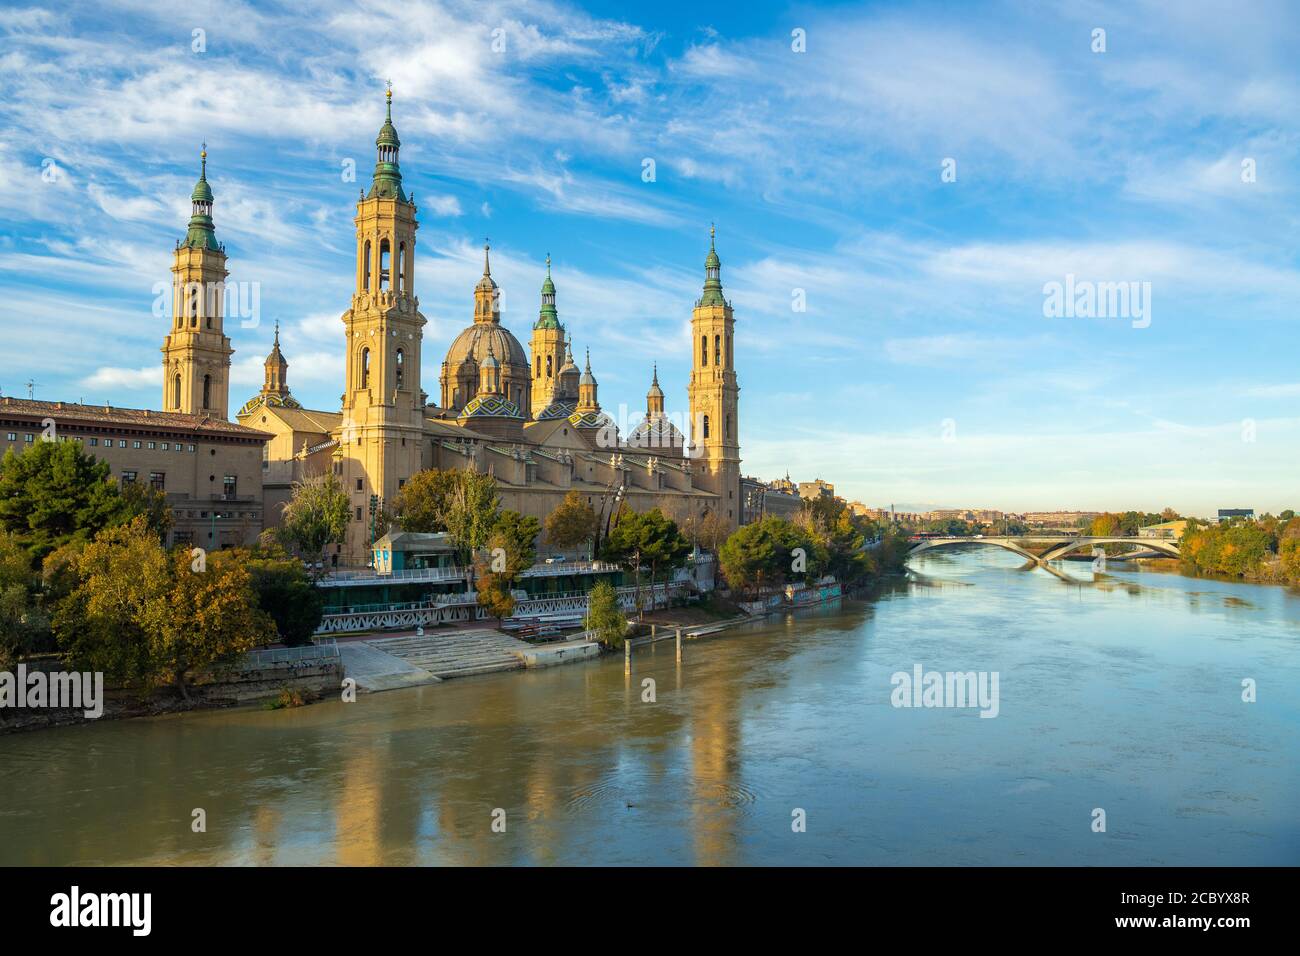 Nuestra Basilica de Senora del Pilar spiegelte sich eines Morgens im Wasser, Zaragoza, Spanien. Stockfoto